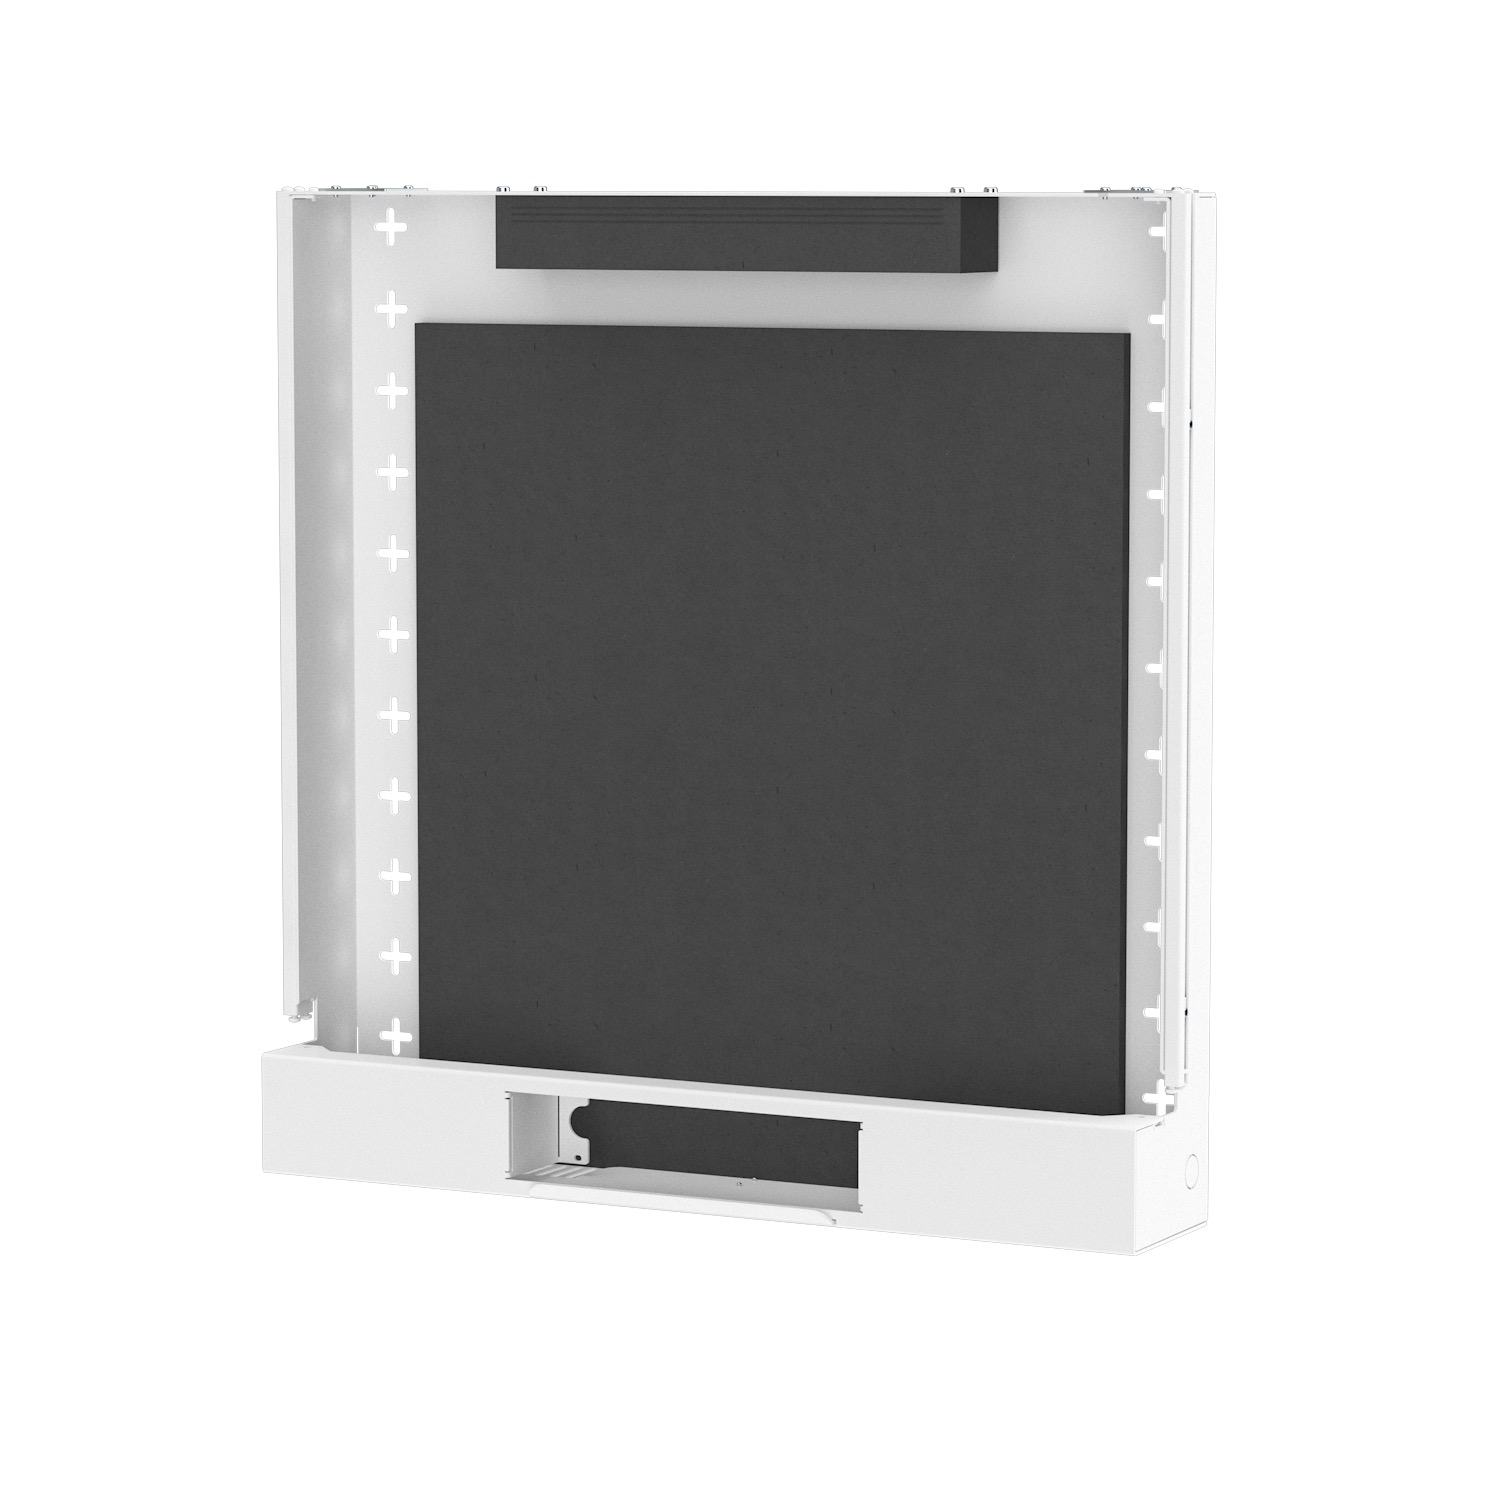 BackBox - wall-mounted enclosure